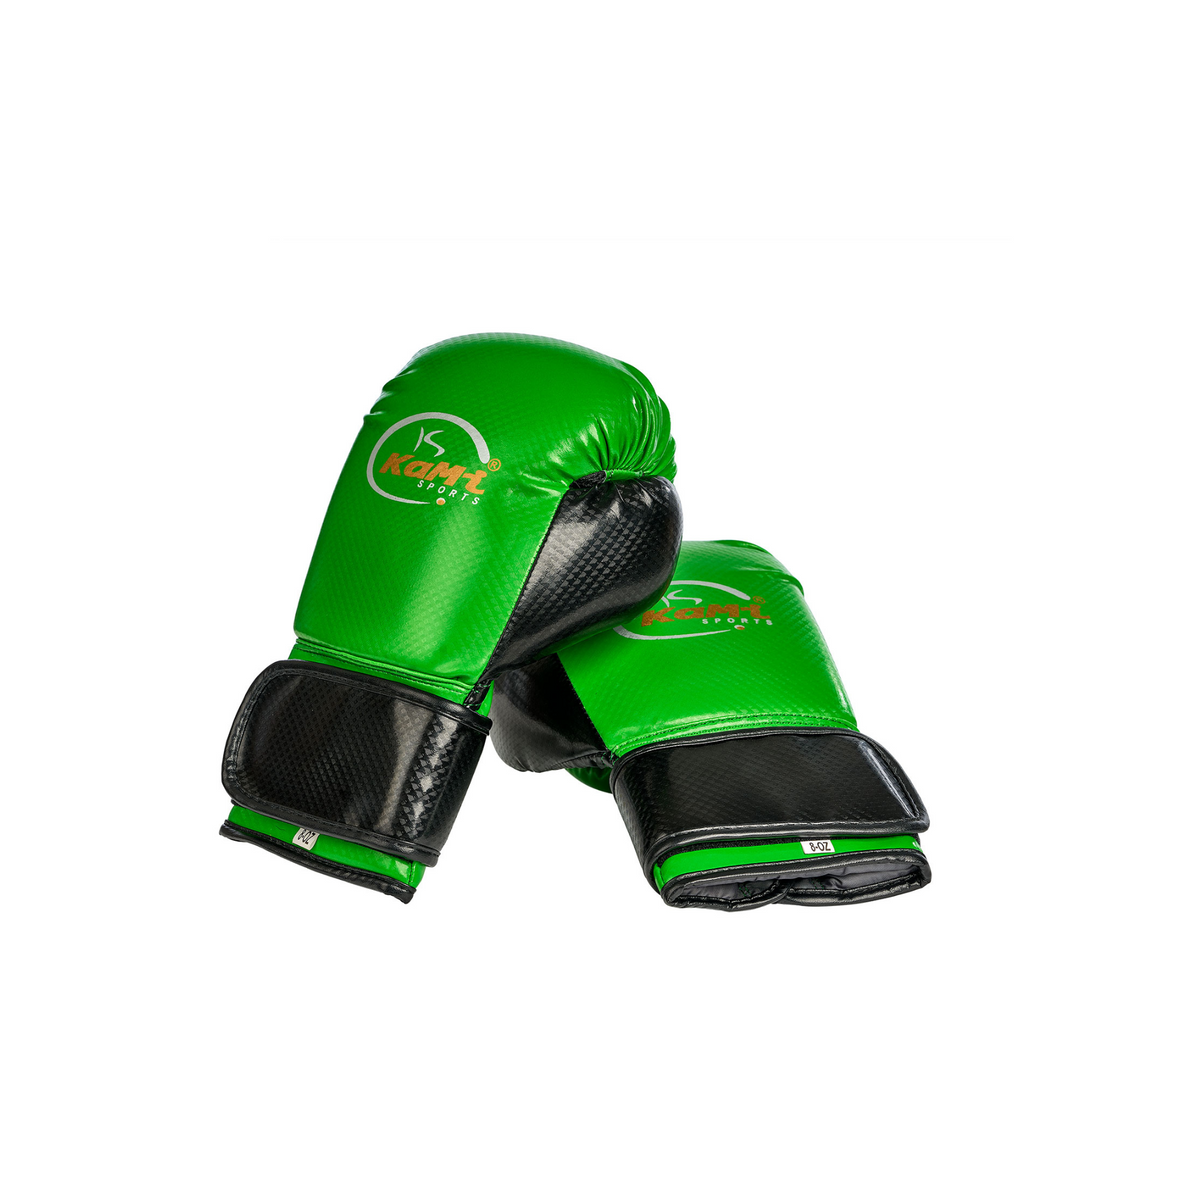 Frontansicht hochwertiger Kinder Boxhandschuhe in grün, entworfen für Sicherheit und Komfort junger Sportler. Diese Handschuhe sind robust, passgenau und bieten dank Premium-Schaumstofftechnologie exzellenten Knöchelschutz. Sie verfügen über eine lange Stulpe zur Handgelenkunterstützung, sind atmungsaktiv durch eine Mesh-Handfläche für Komfort und aus langlebigem PU-Leder gefertigt. Ideal für Boxen, MMA, Kickboxen und Muay Thai, schützen sie junge Athleten bei intensivem Training und Wettkämpfen.